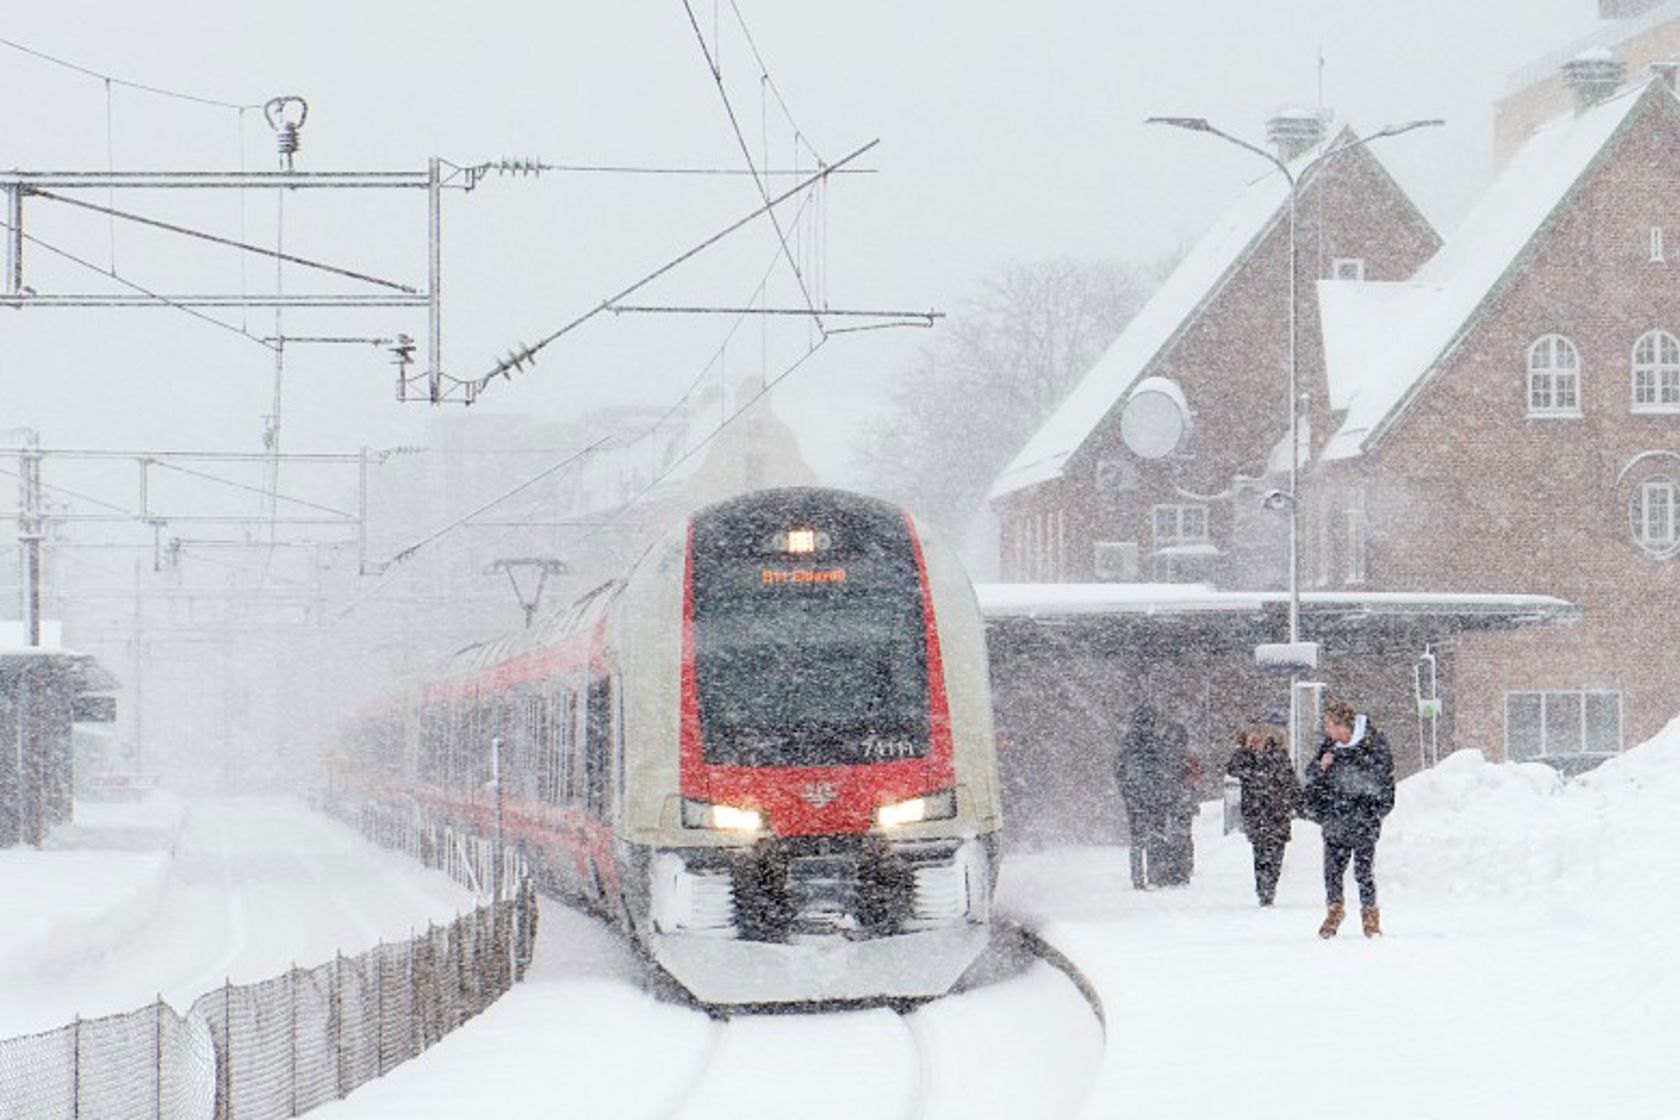 Tog i snøvær klart til avgang fra stasjon